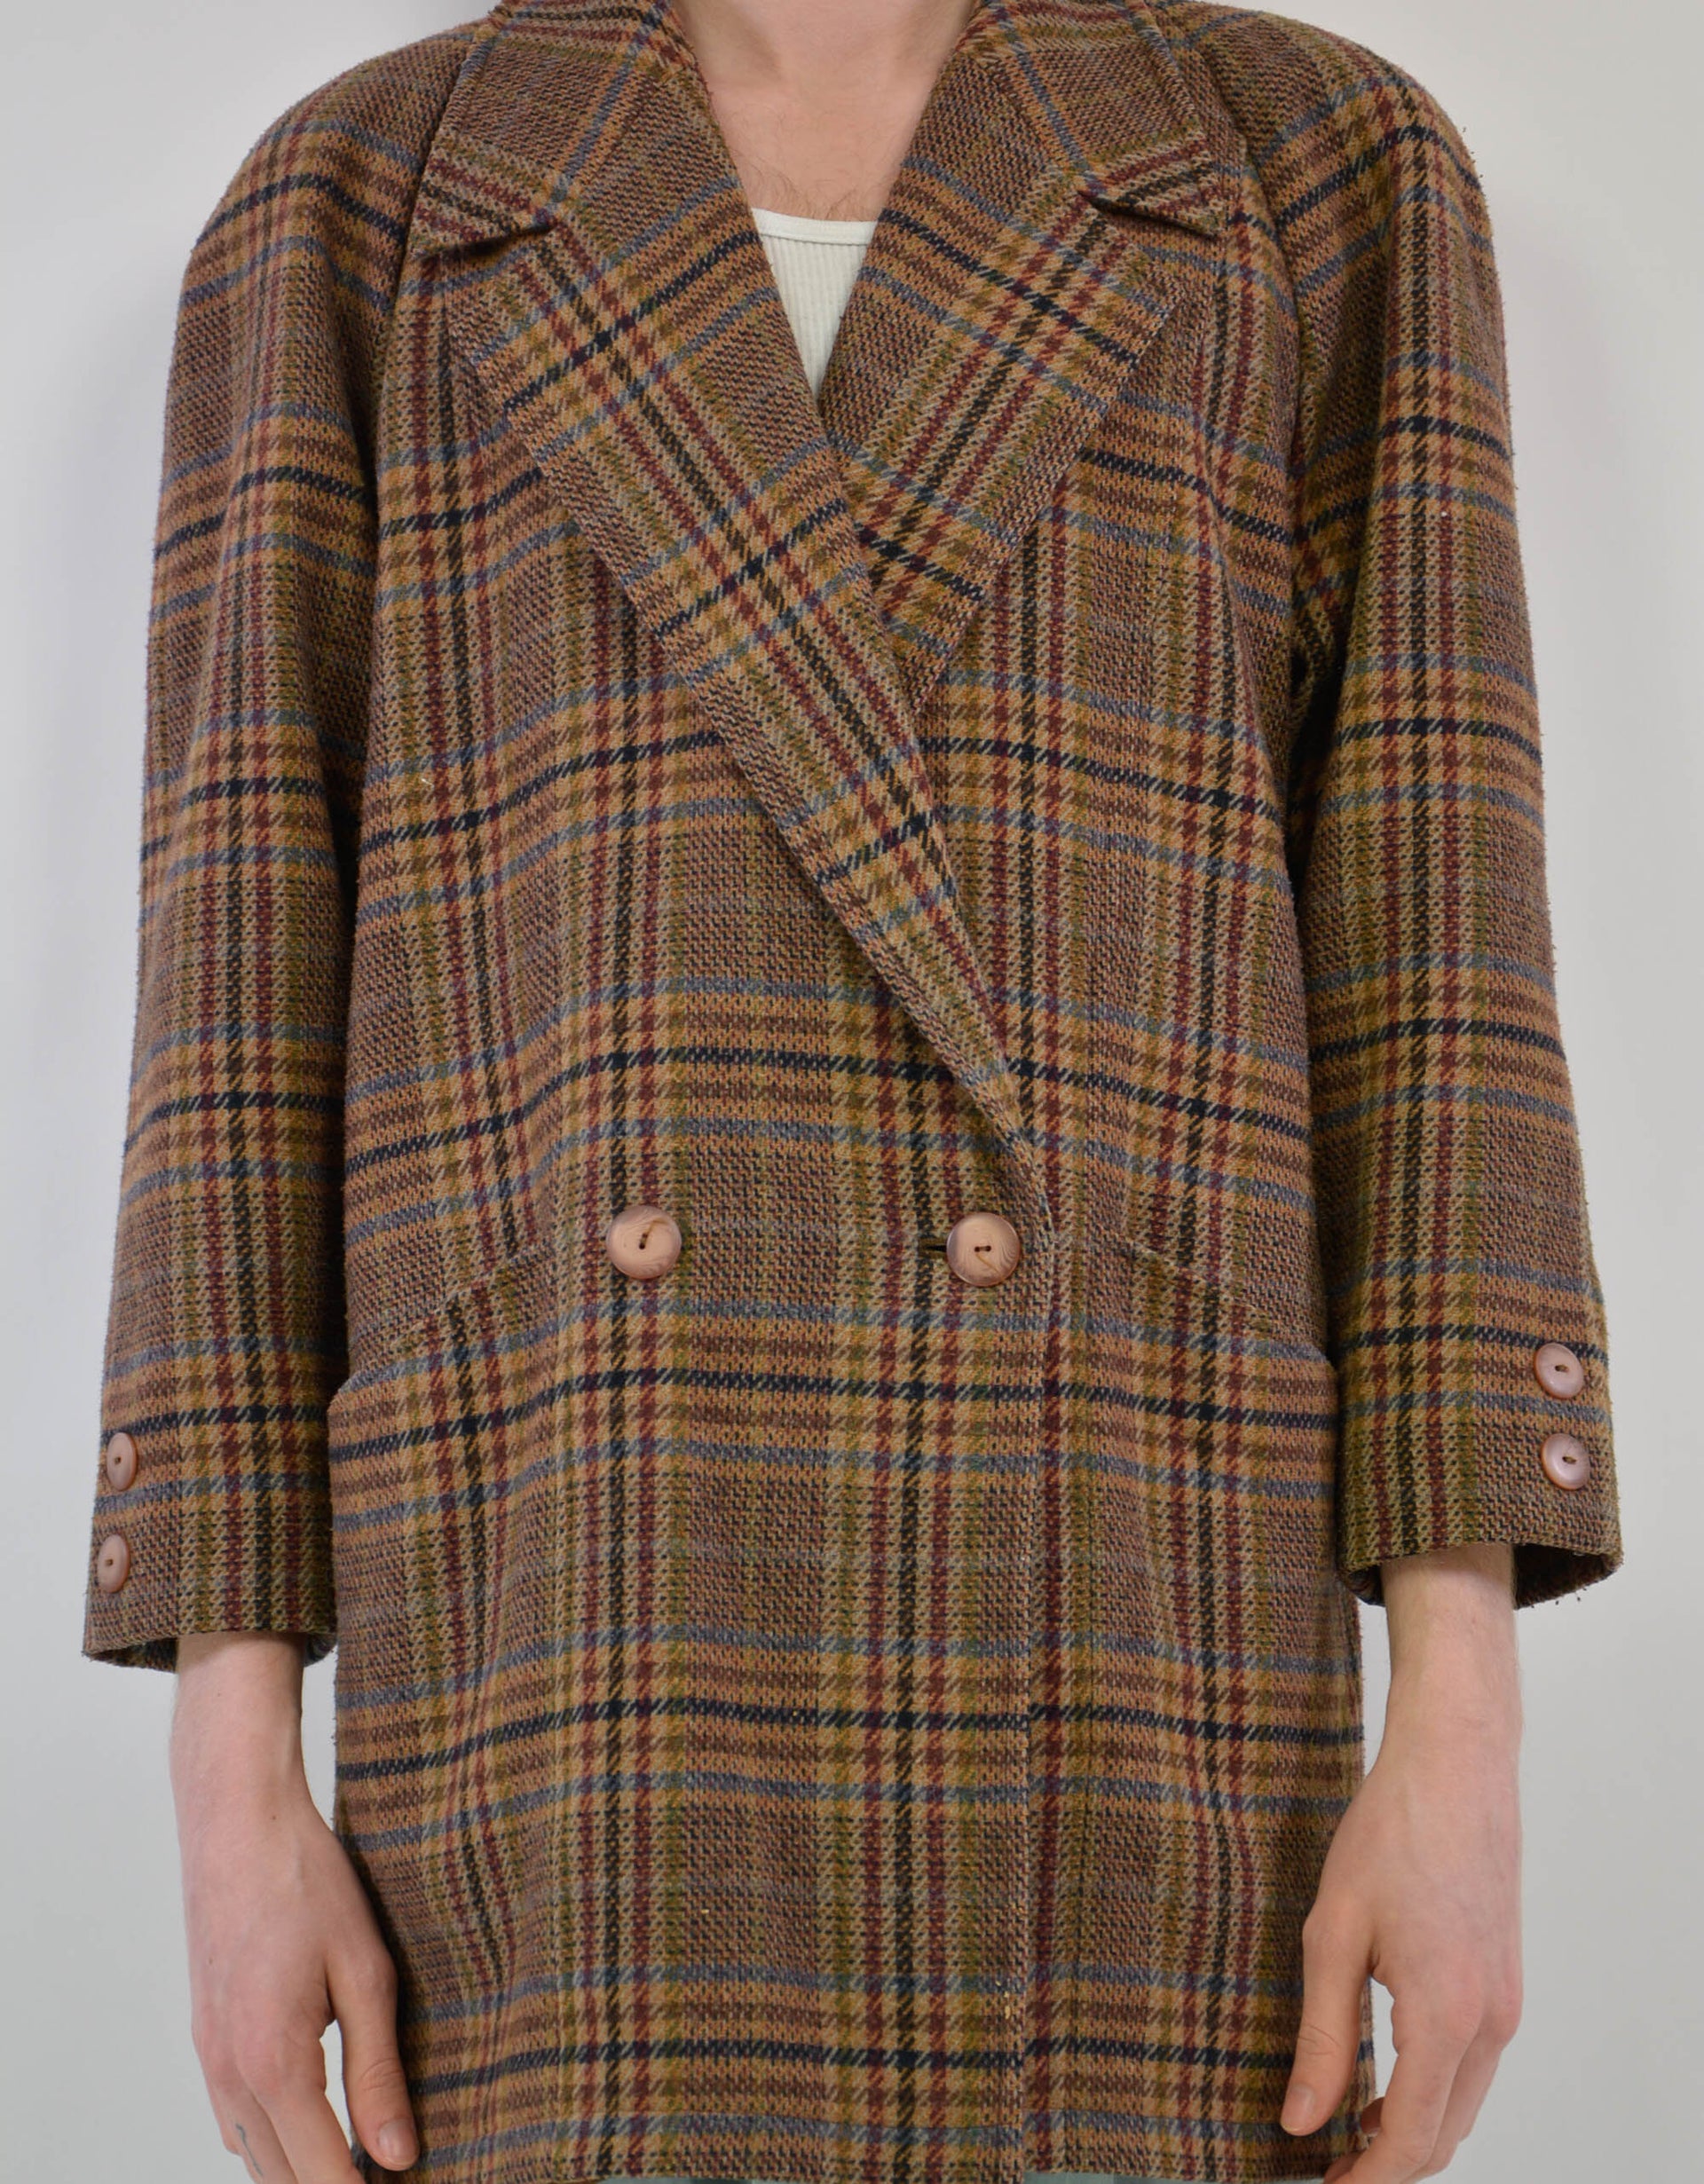 Tweed wool jacket - PICKNWEIGHT - VINTAGE KILO STORE